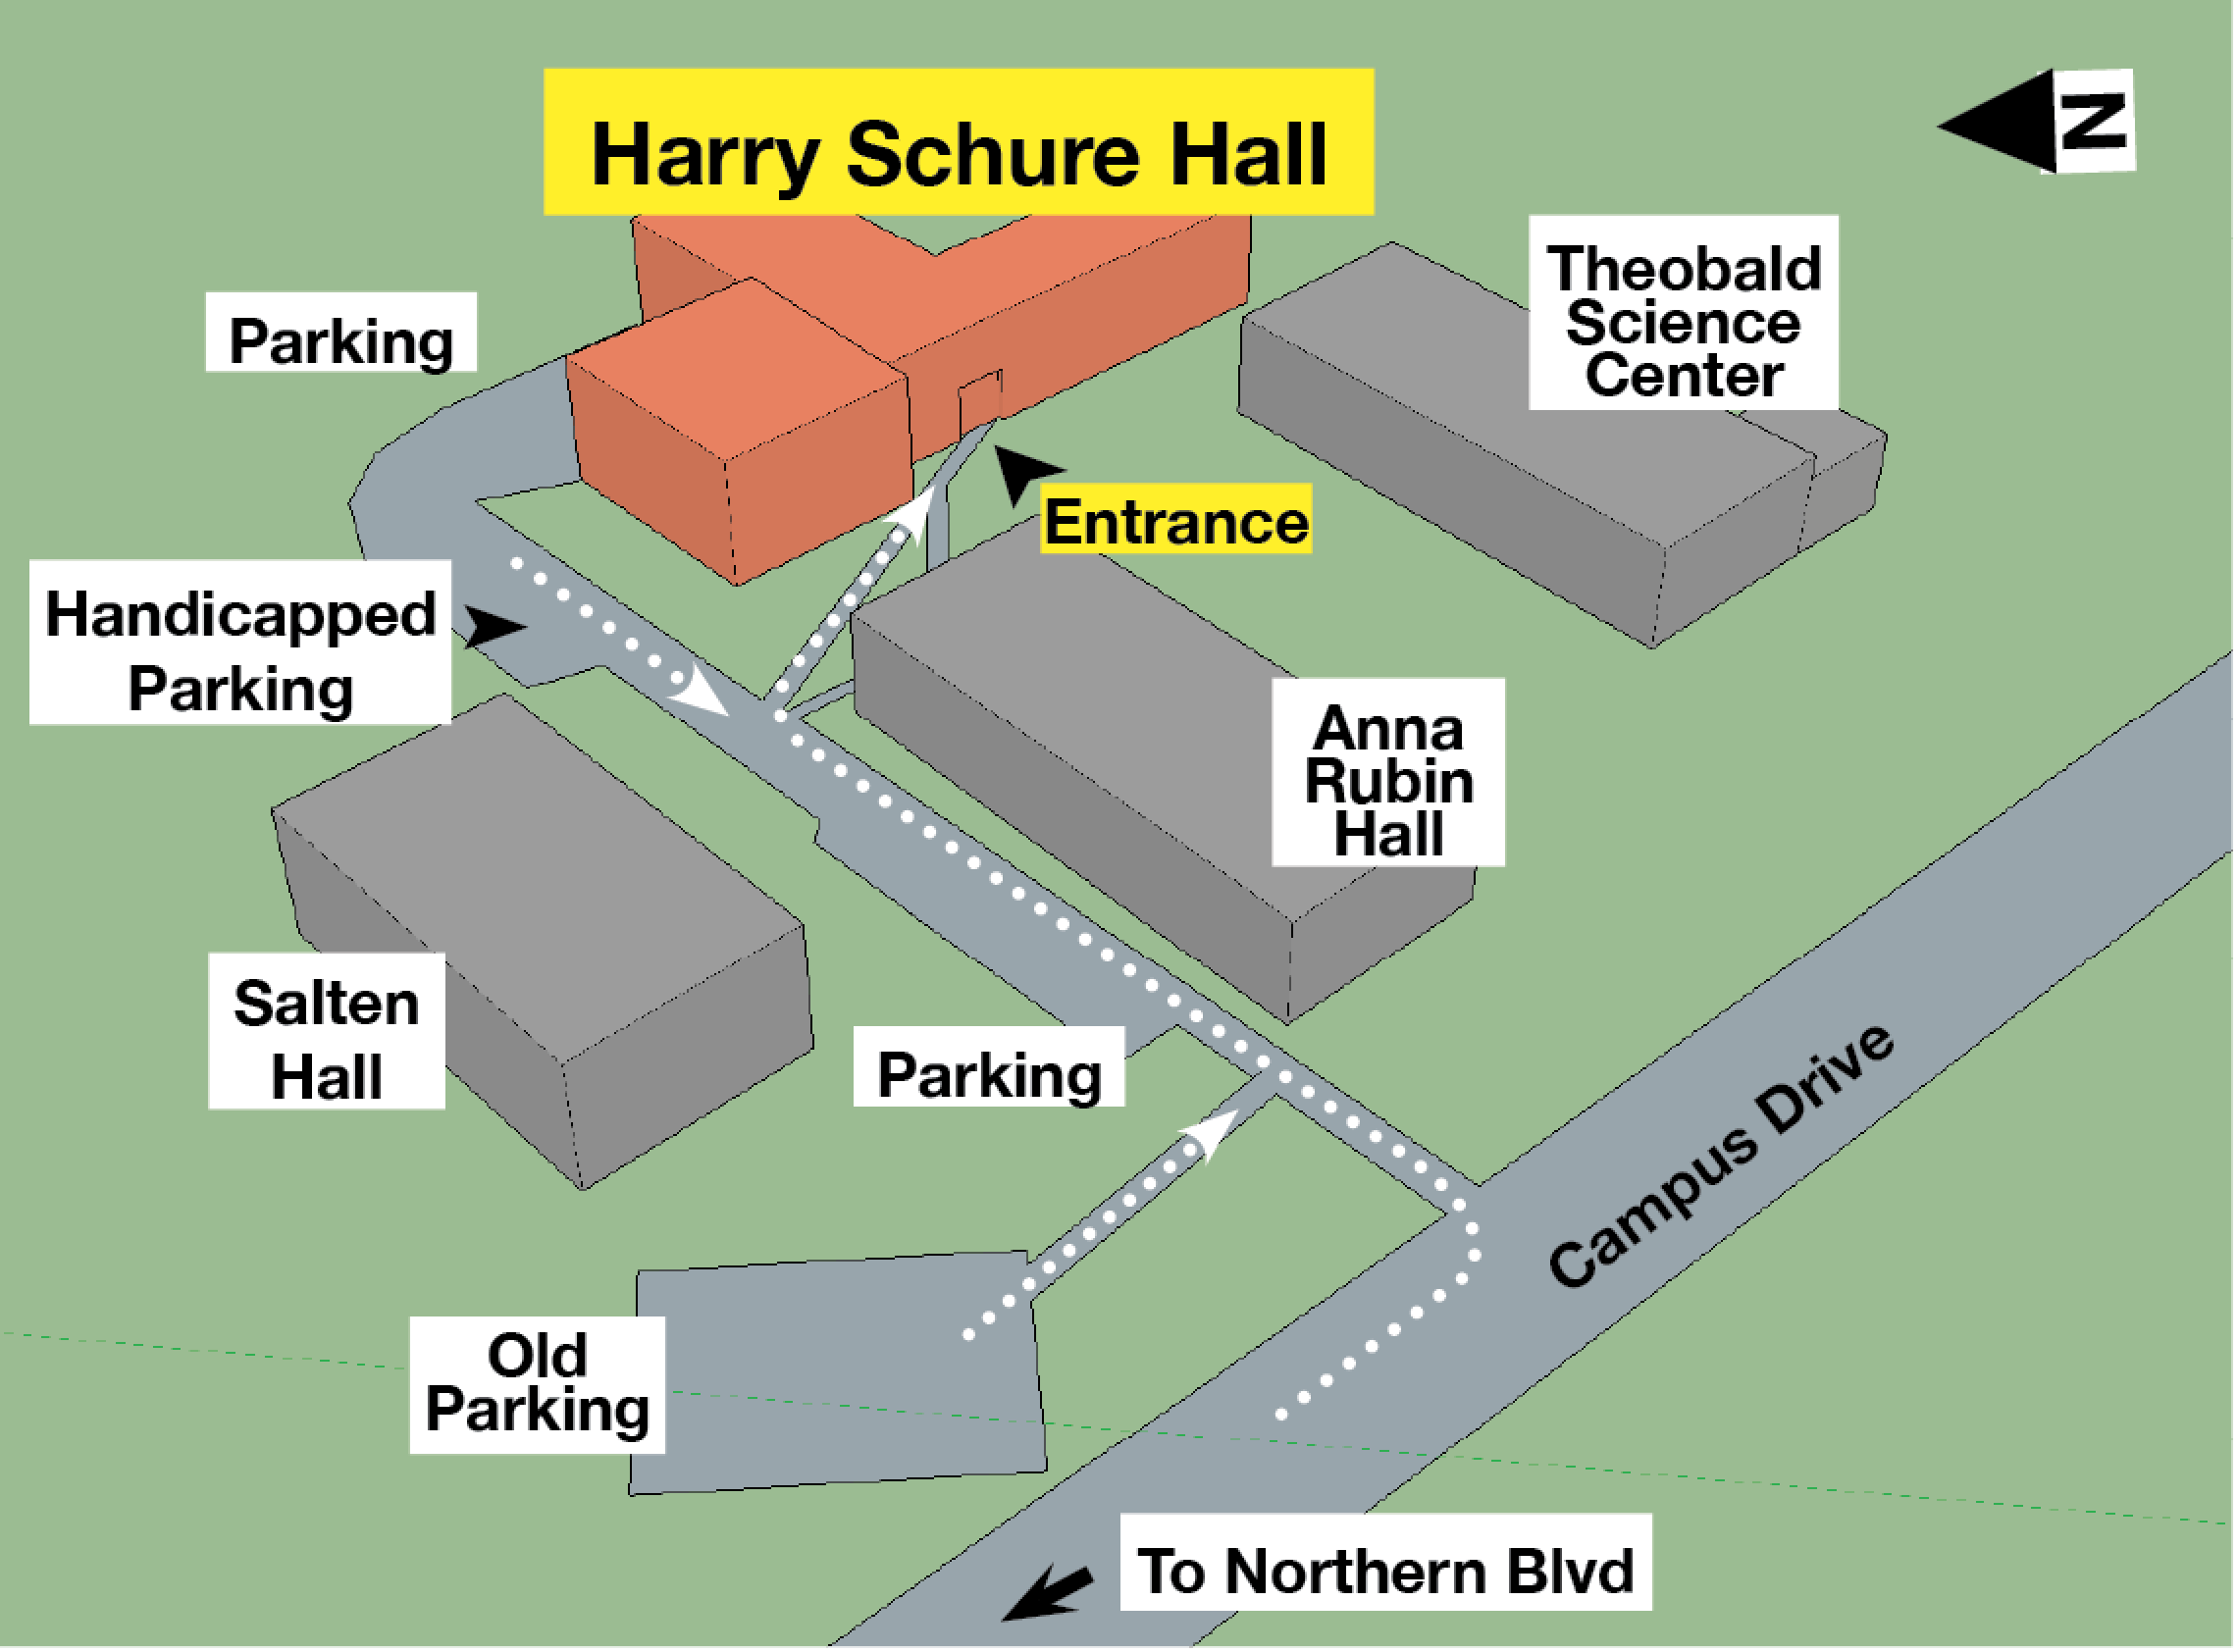 Harry Schure Hall